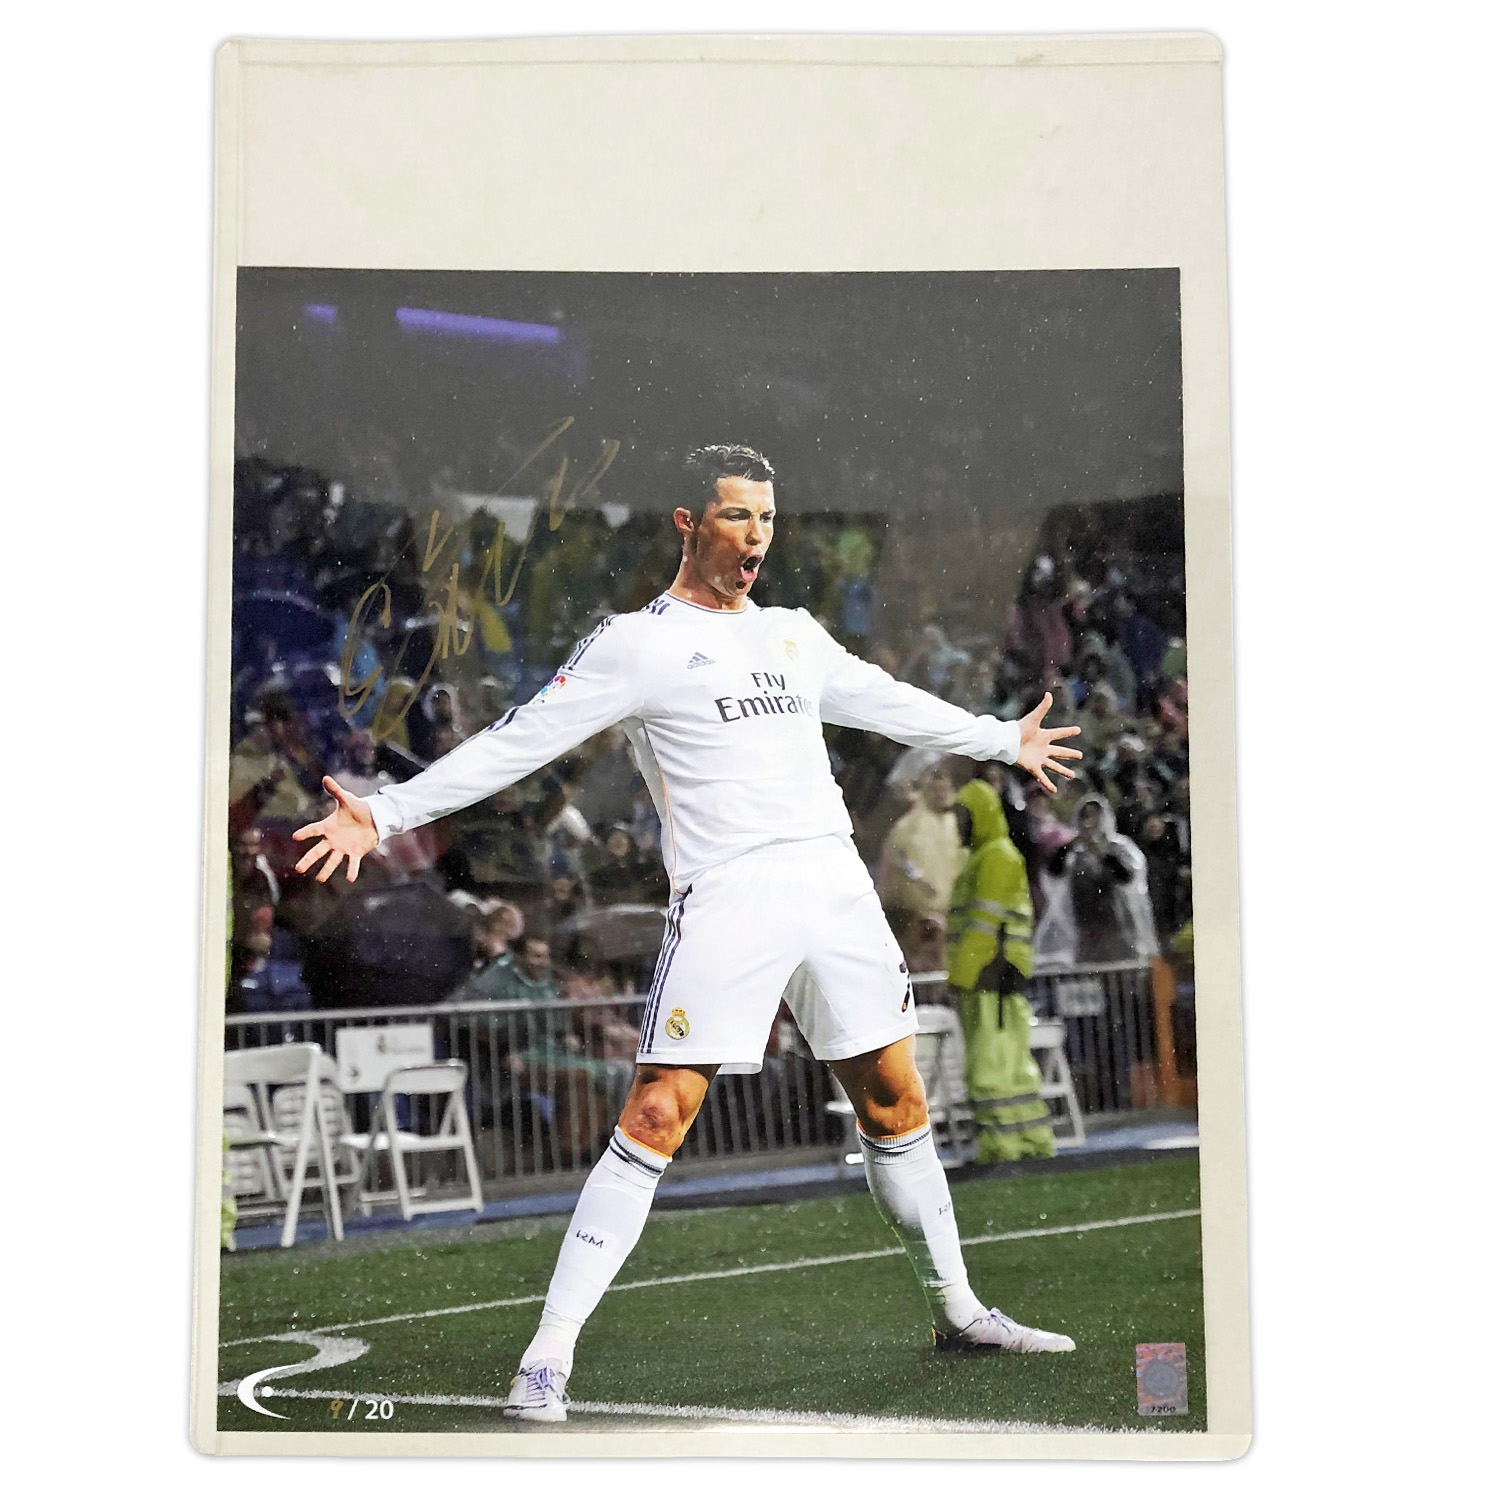 ロナウド直筆サイン入りグラフィックアート限定版 #9/20 THE DUGOUT / Cristiano Ronaldo signed limited  edition graphic art #9/20 THE DUGOUT